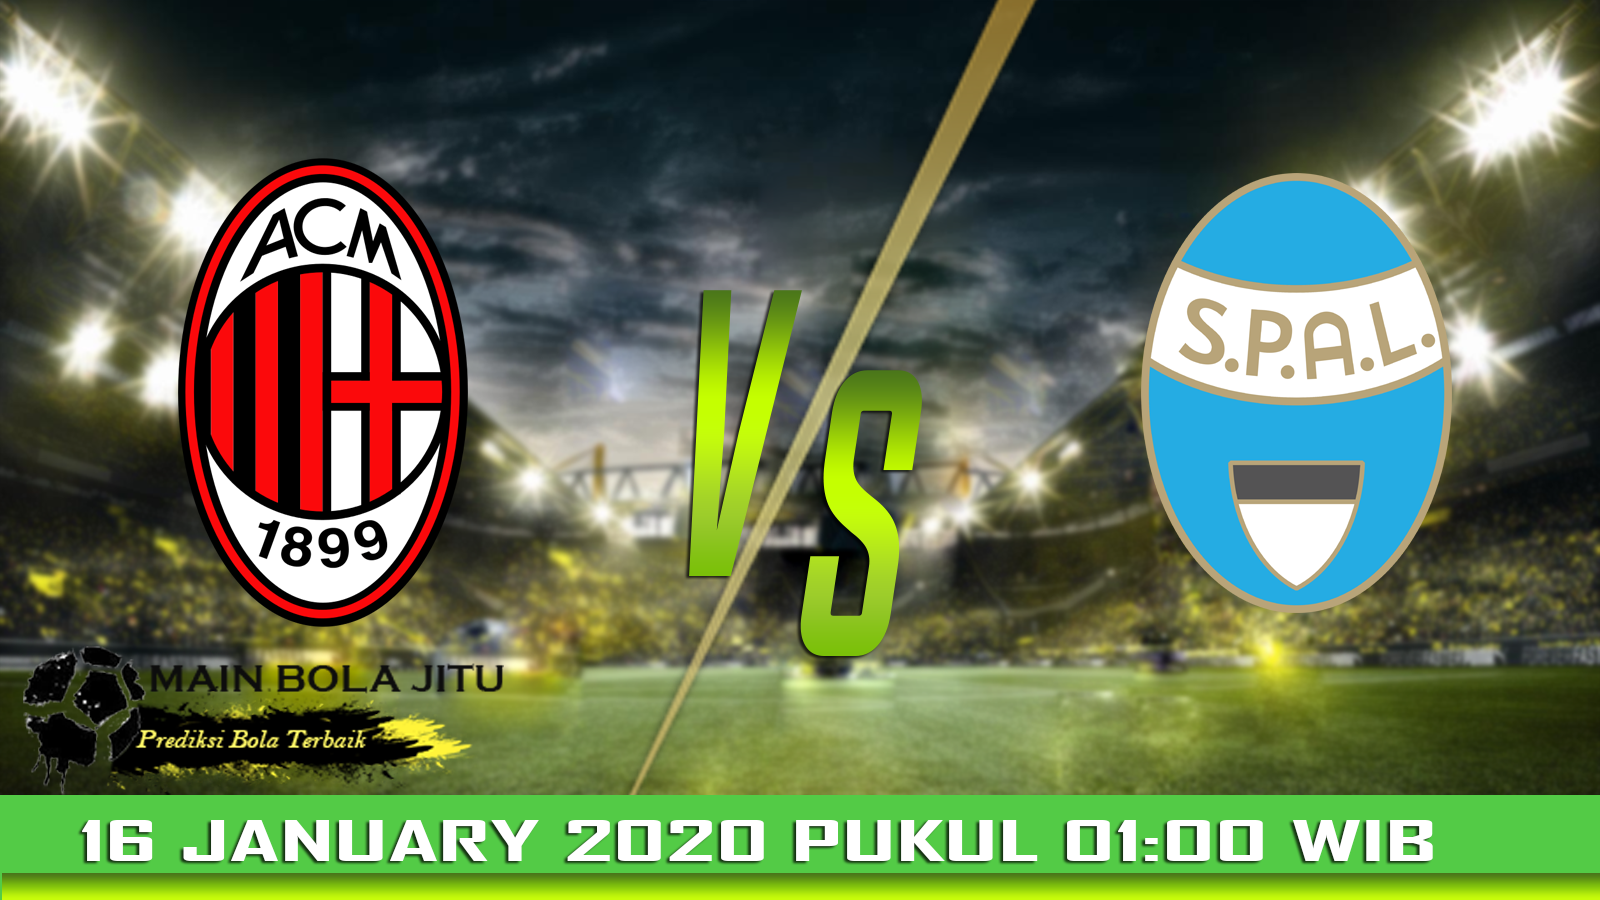 Prediksi Skor AC Milan vs Spal tanggal 16-01-2020